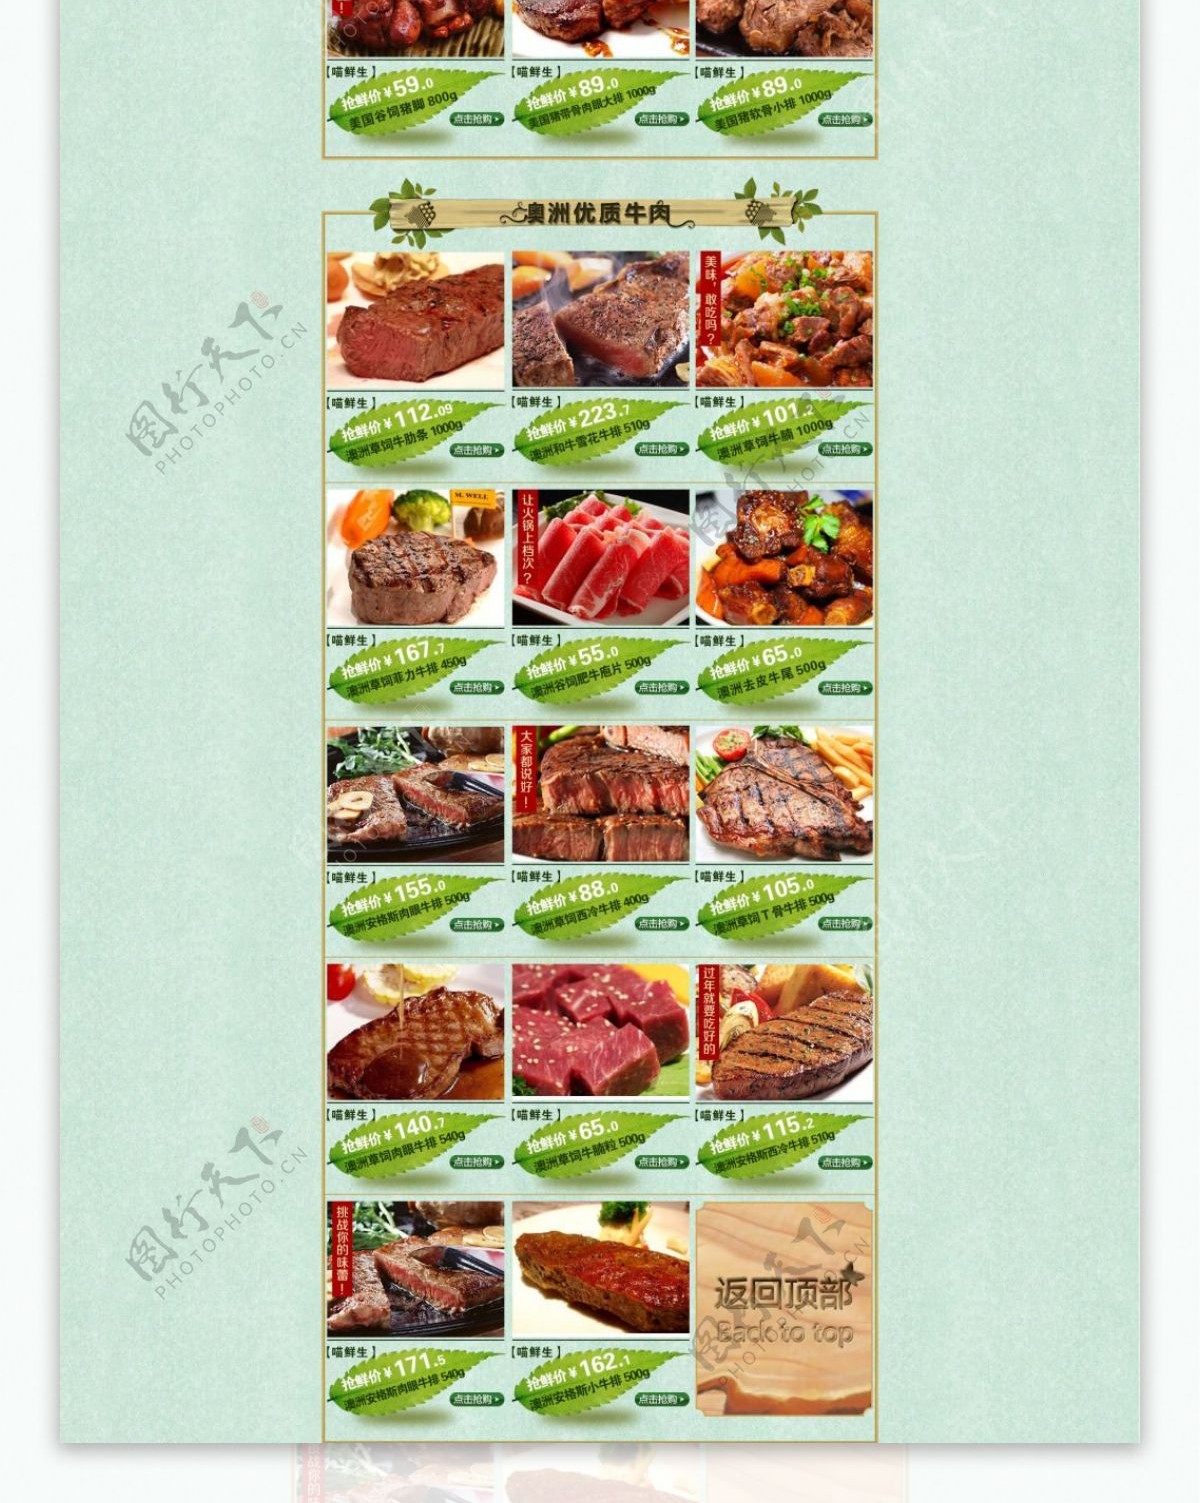 肉类美食活动首页海报